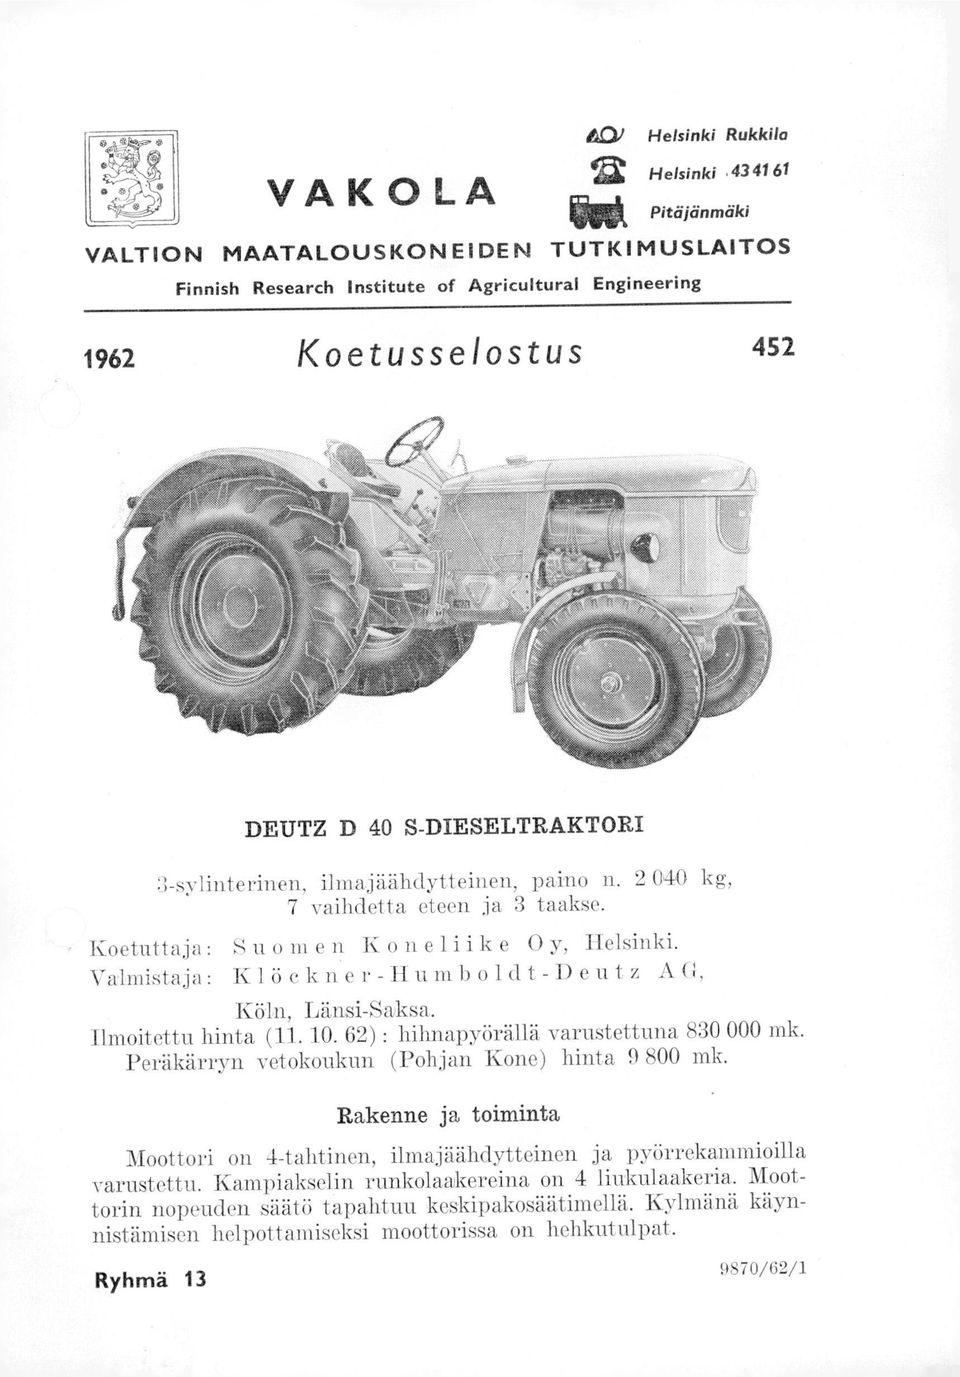 Valmistaja: Klöckner-Humboldt-Deutz AG, Köln, Länsi-Saksa. Ilmoitettu hinta (11. 10. 62) : hihnapyörällä varustettuna 830 000 mk. Peräkärryn vetokoukun (Pohjan Kone) hinta 9 800 mk.